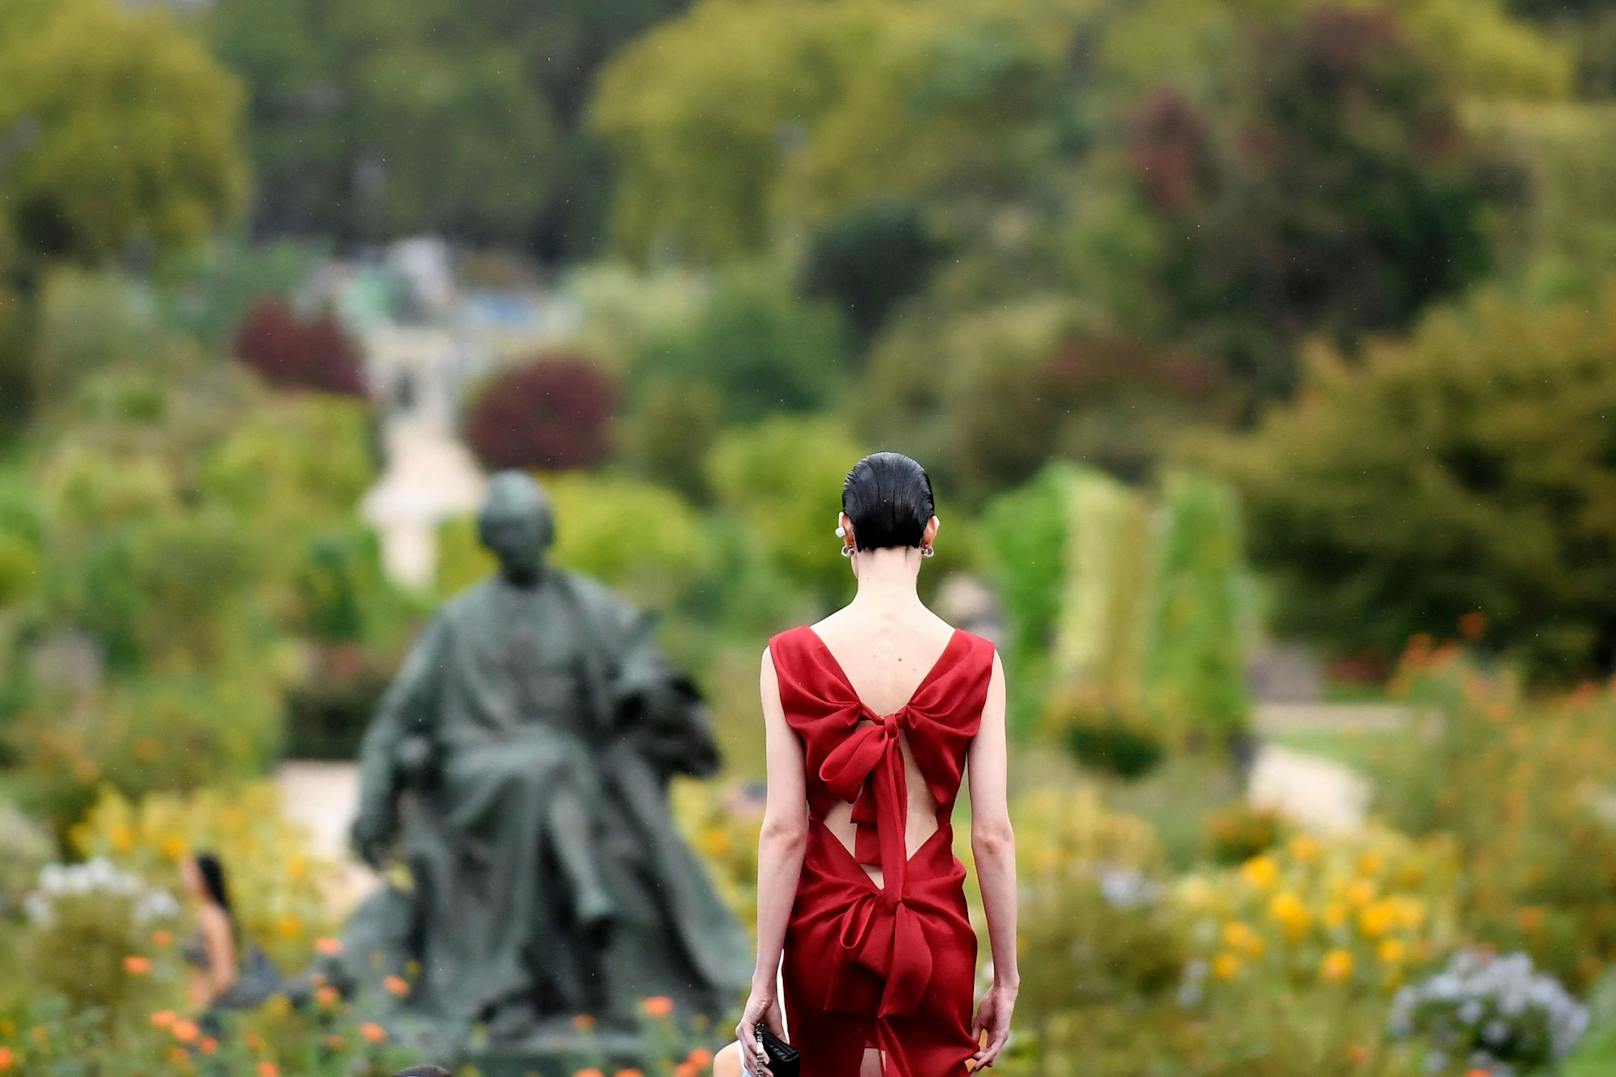 Der krönende Abschluss: Ein rotes Kleid mit einer Rückenansicht, die nur entzücken kann – vor allem jene, die gerne Geschenke auspacken.